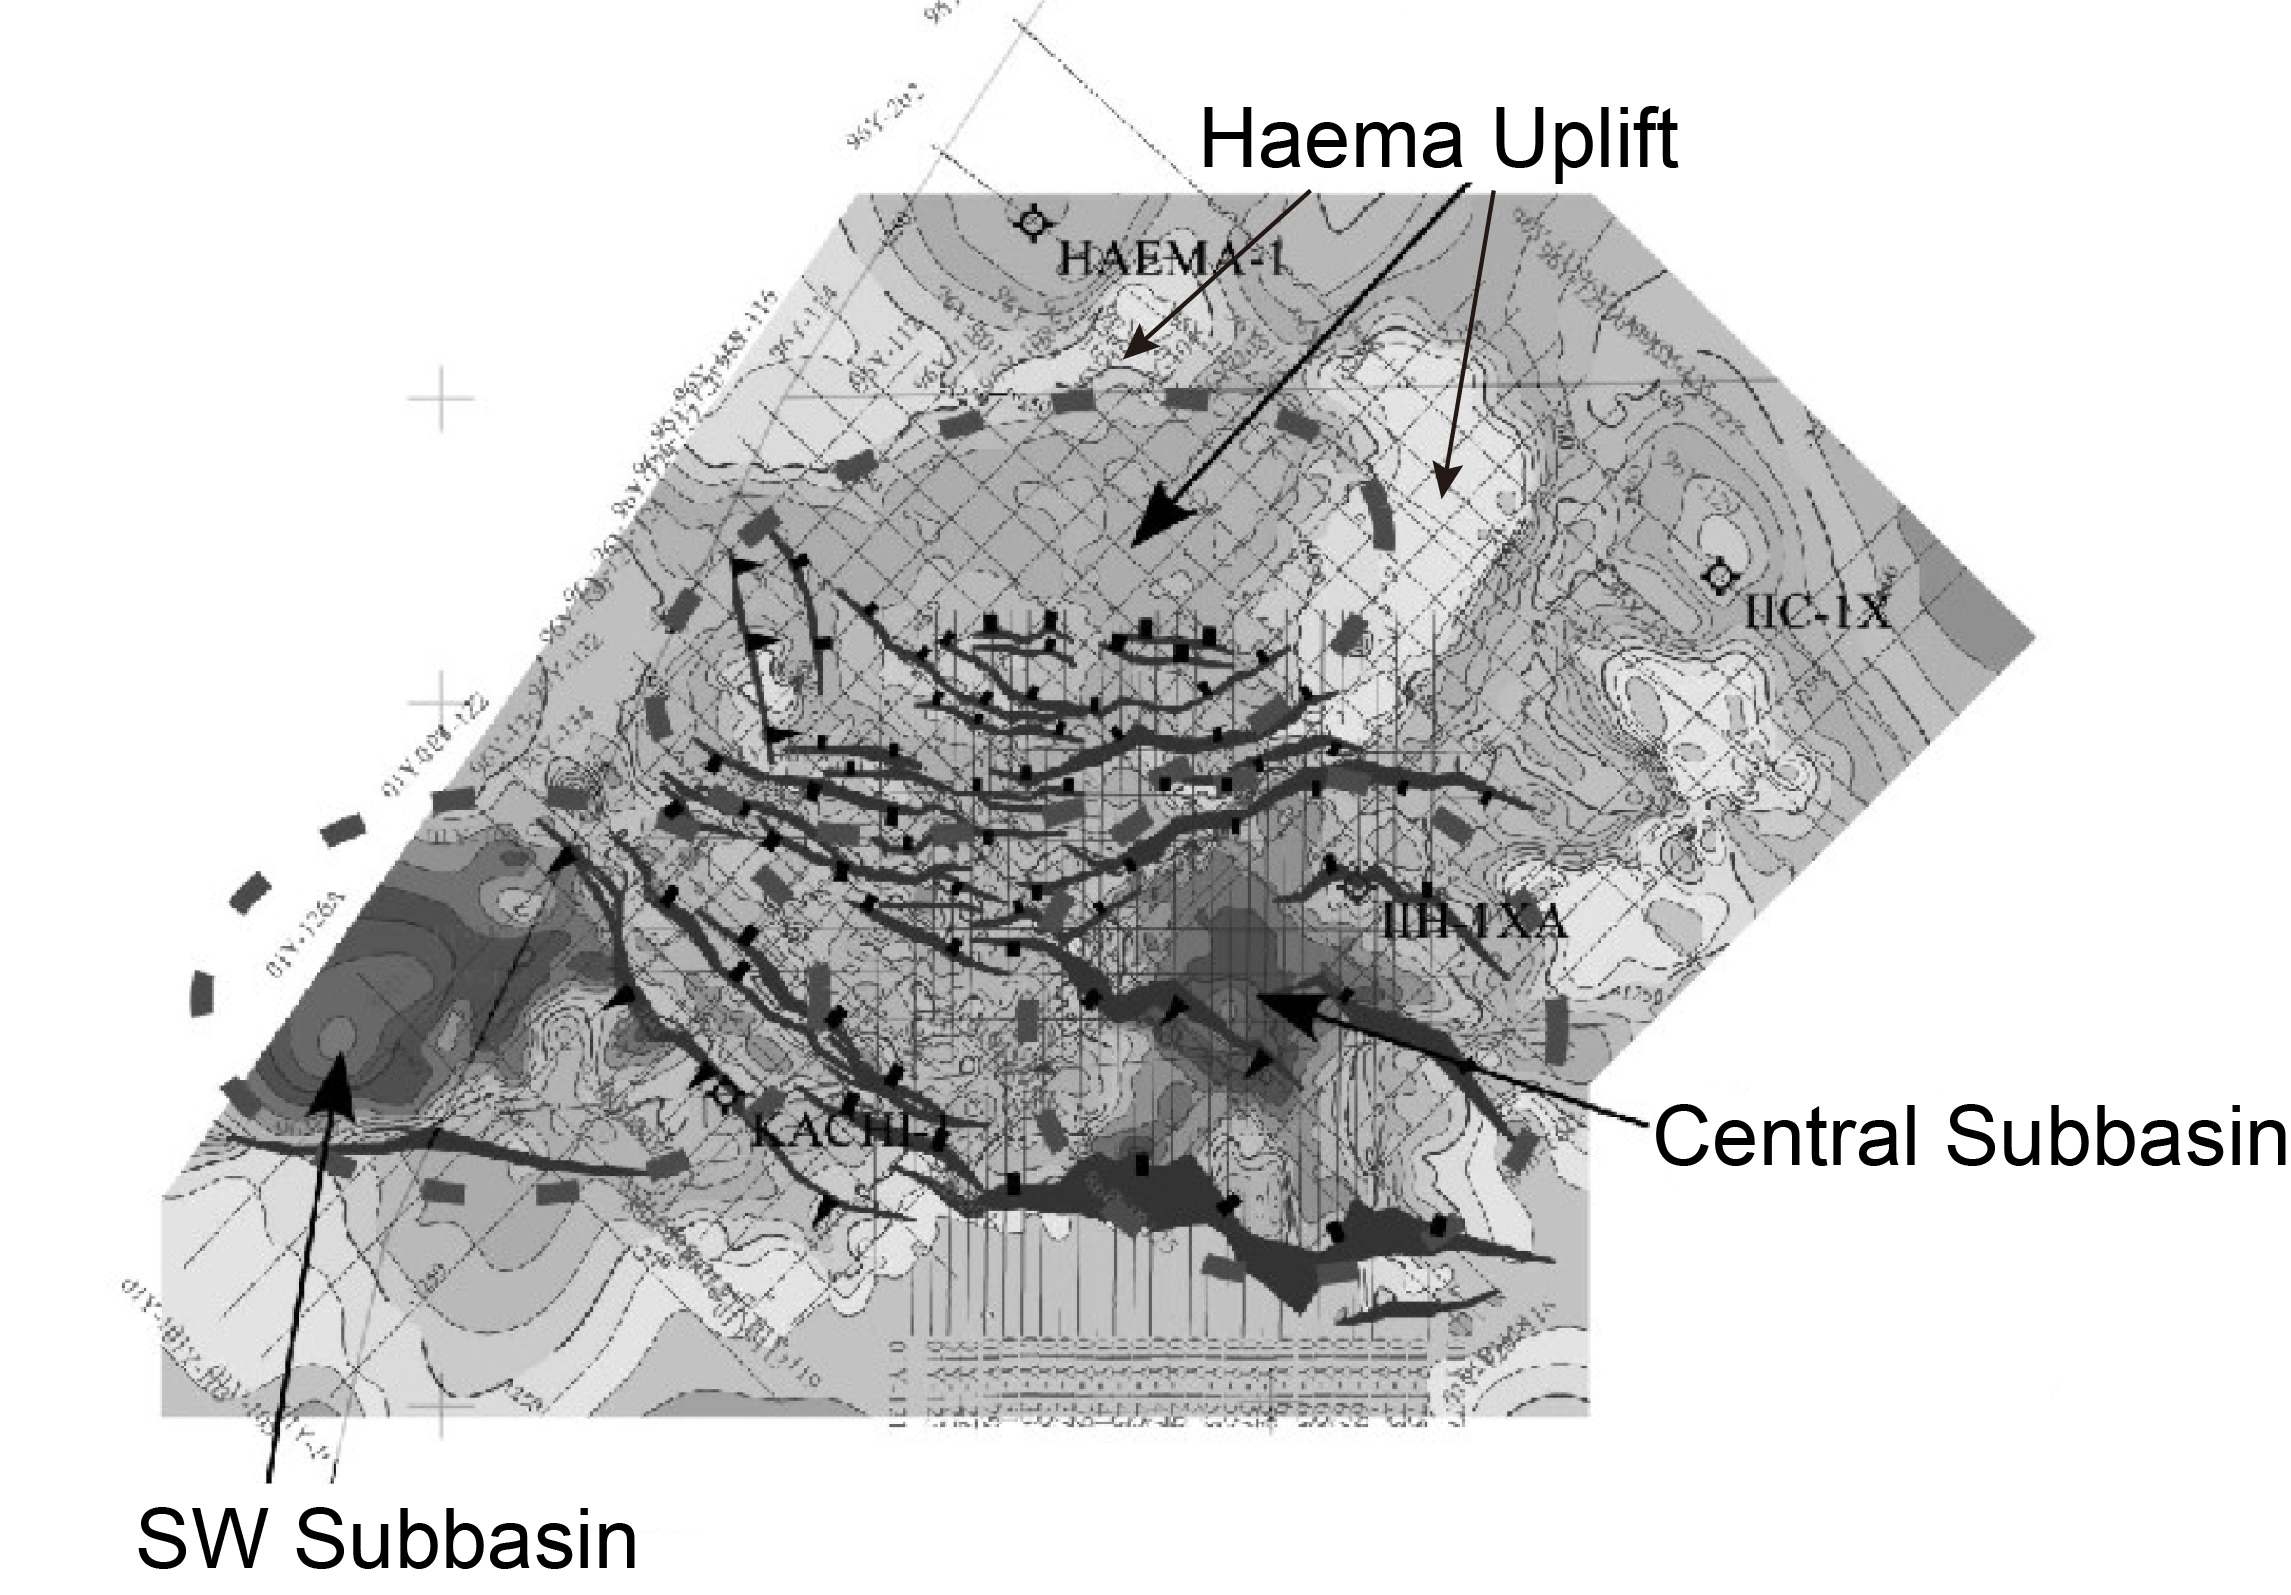 Basement structure from Park et al. (2005).